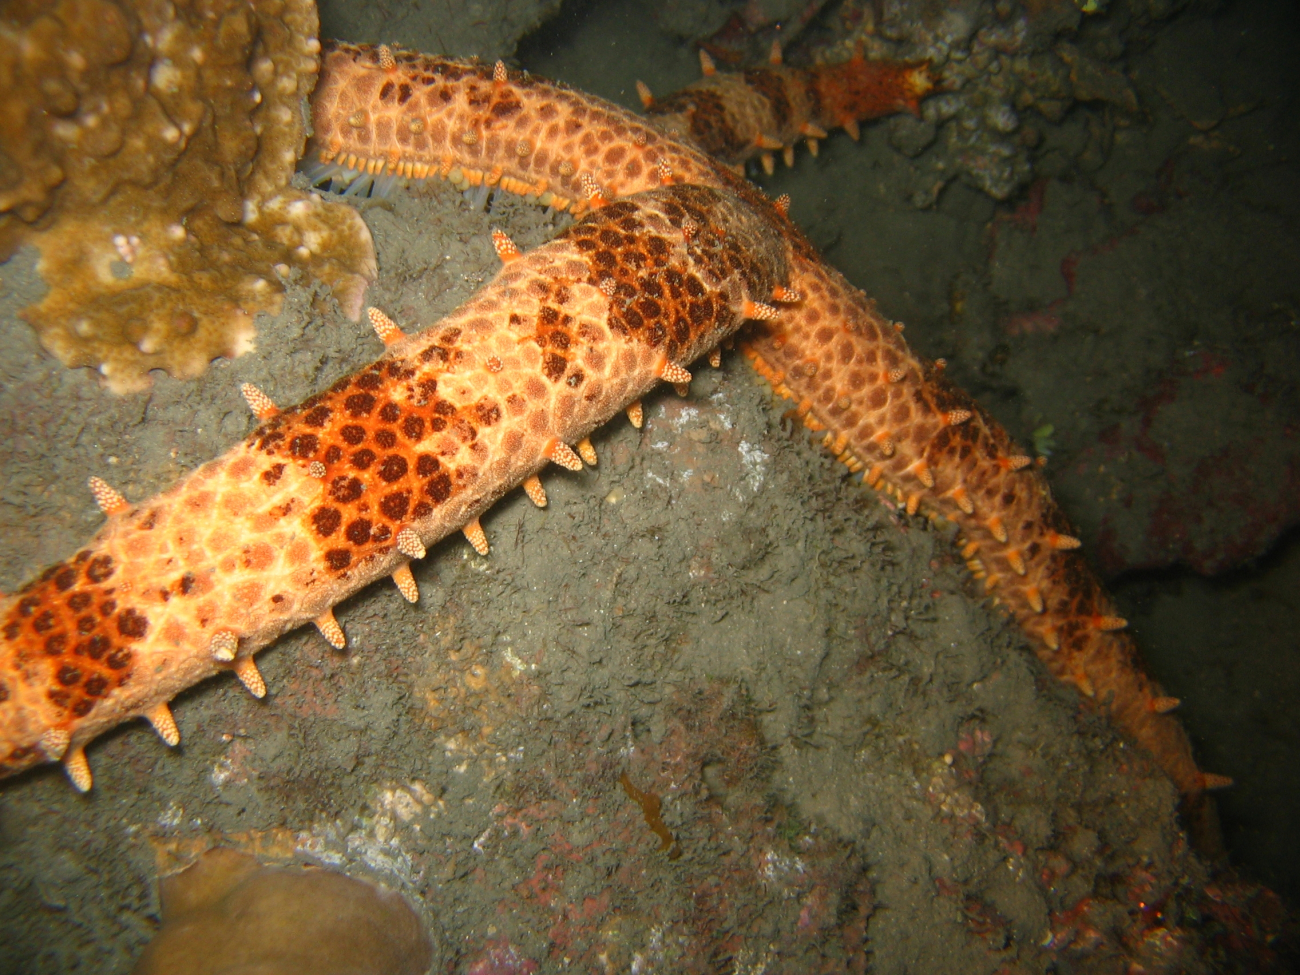 A sea star (Mithrodia sp